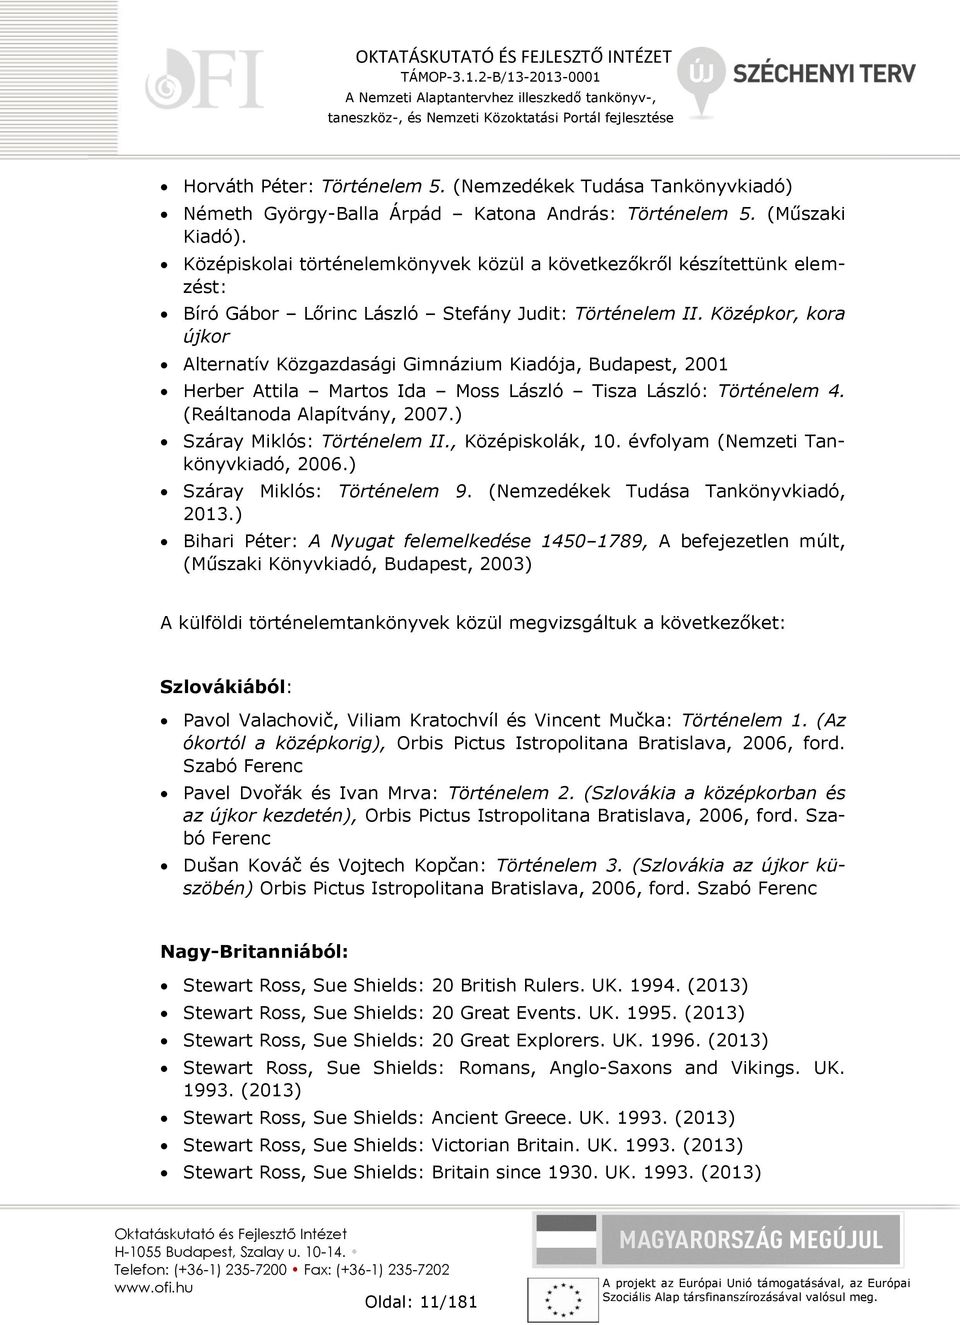 Középkor, kora újkor Alternatív Közgazdasági Gimnázium Kiadója, Budapest, 2001 Herber Attila Martos Ida Moss László Tisza László: Történelem 4. (Reáltanoda Alapítvány, 2007.